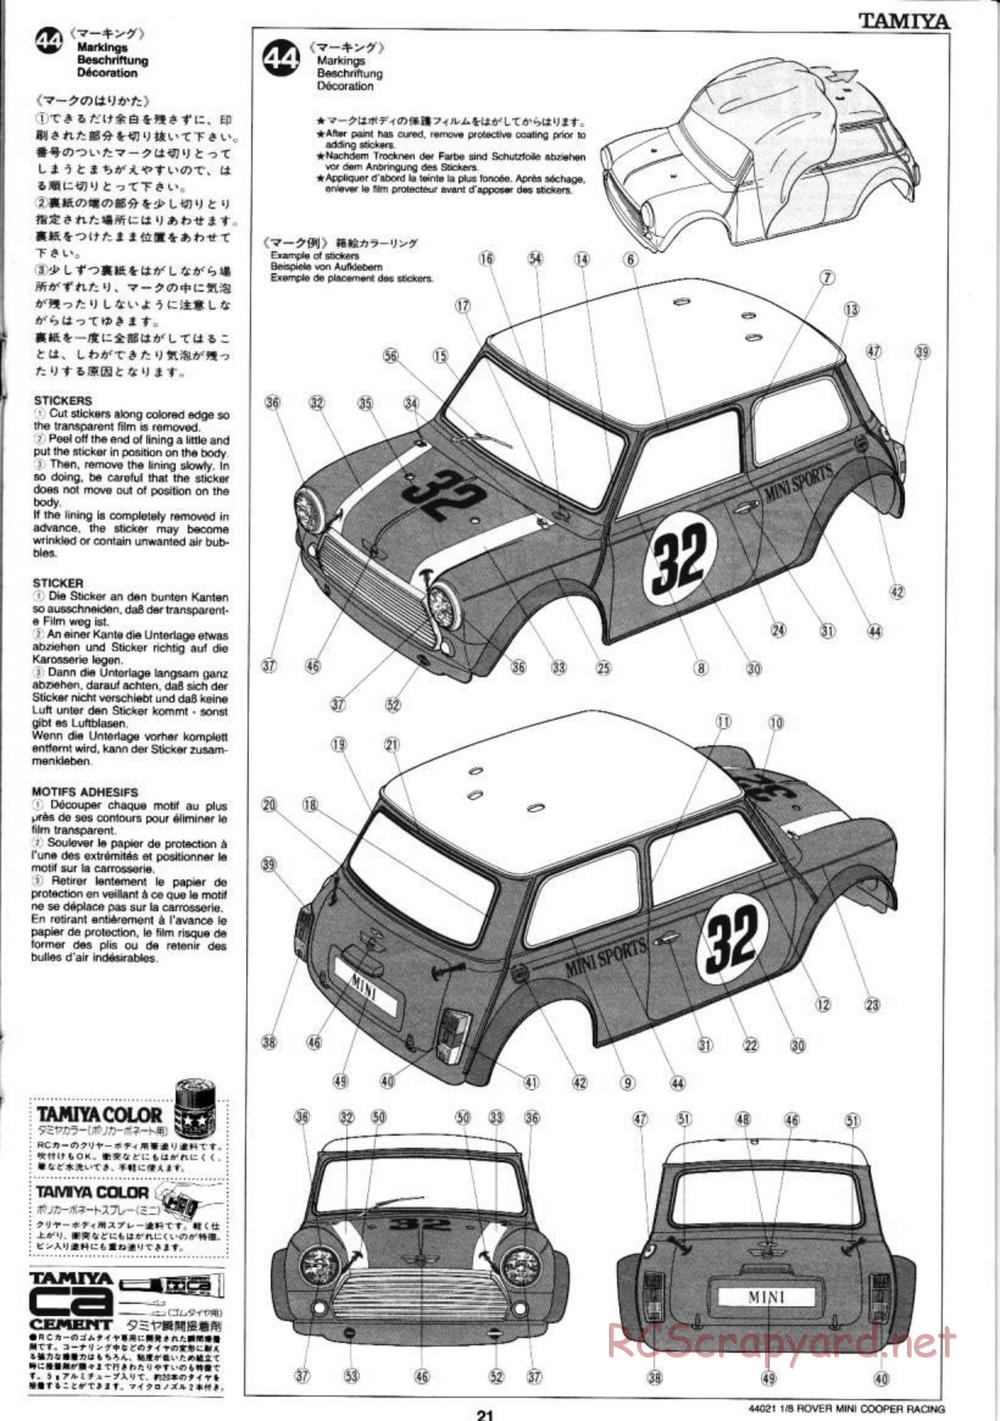 Tamiya - Rover Mini Cooper Racing - TG10 Mk.1 Chassis - Manual - Page 21